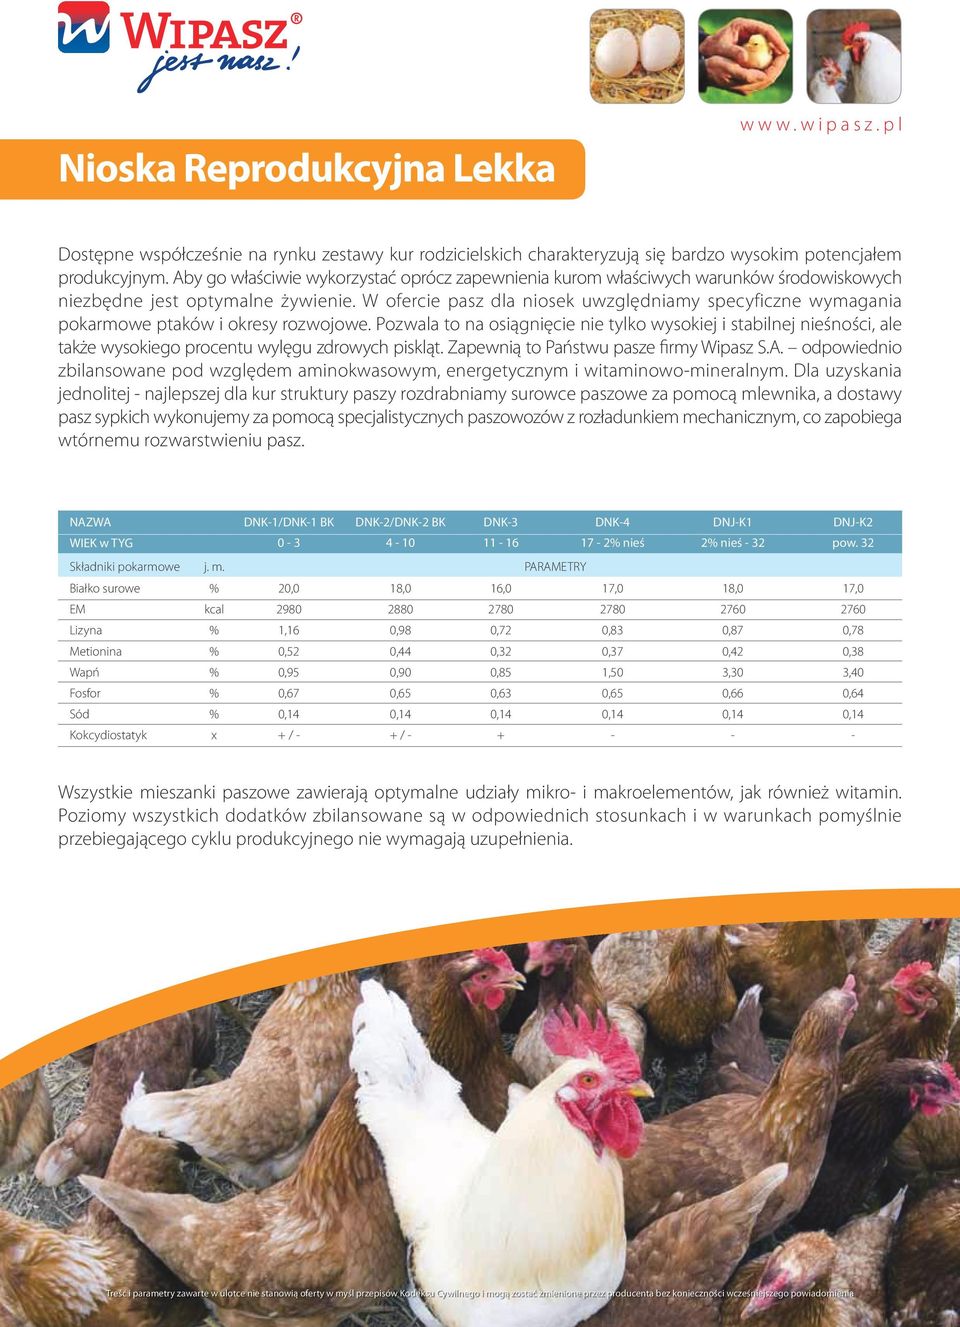 W ofercie pasz dla niosek uwzględniamy specyficzne wymagania pokarmowe ptaków i okresy rozwojowe.